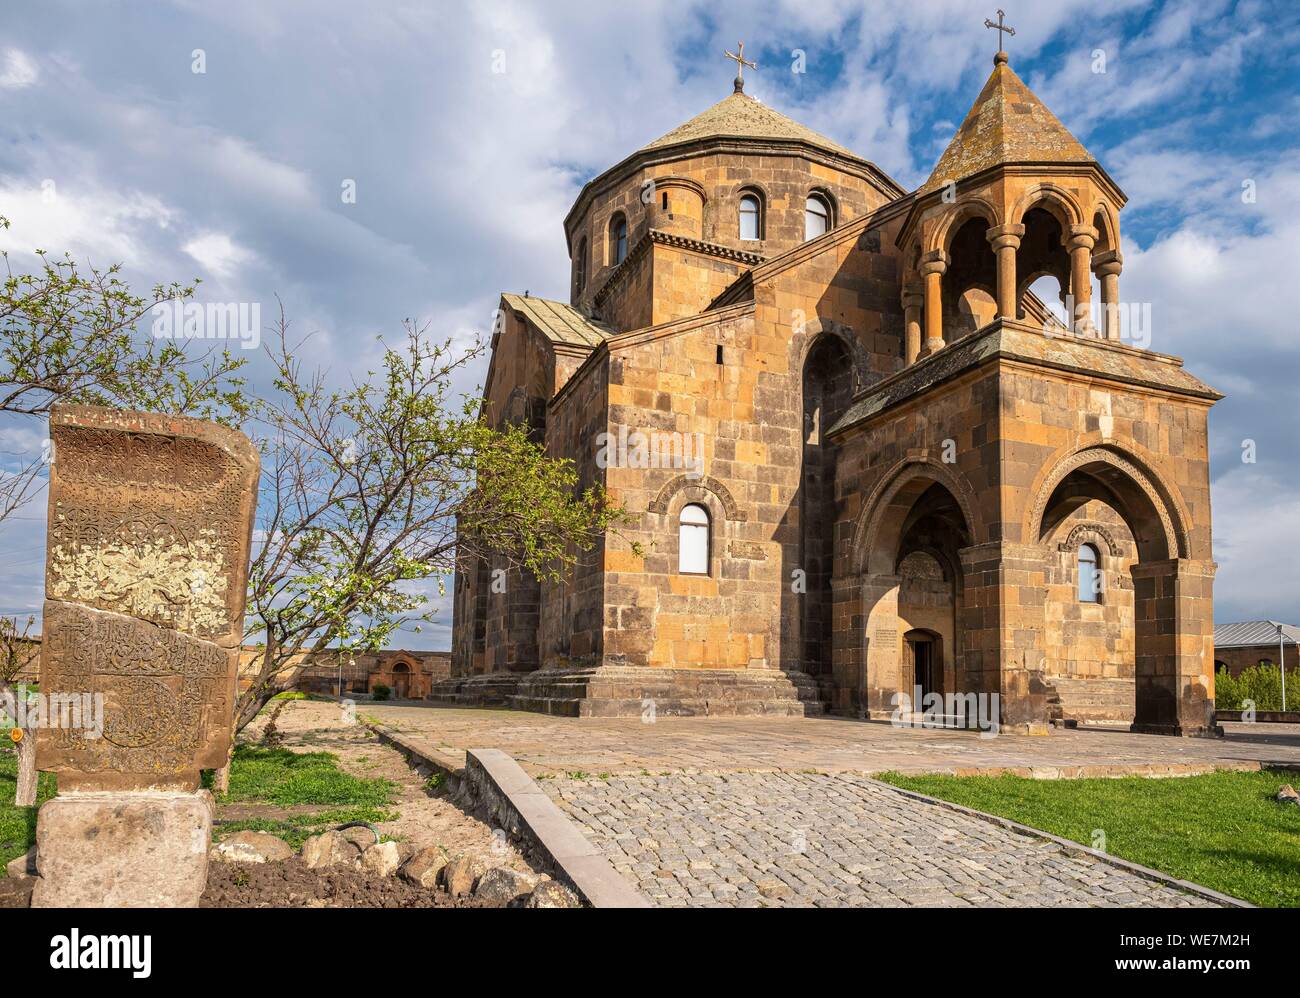 Armenien, Kirov region, Etschmiadzin, religiösen Komplex von etschmiadzin als Weltkulturerbe von der UNESCO, 7. Jahrhundert St. Hripsime Kirche Stockfoto